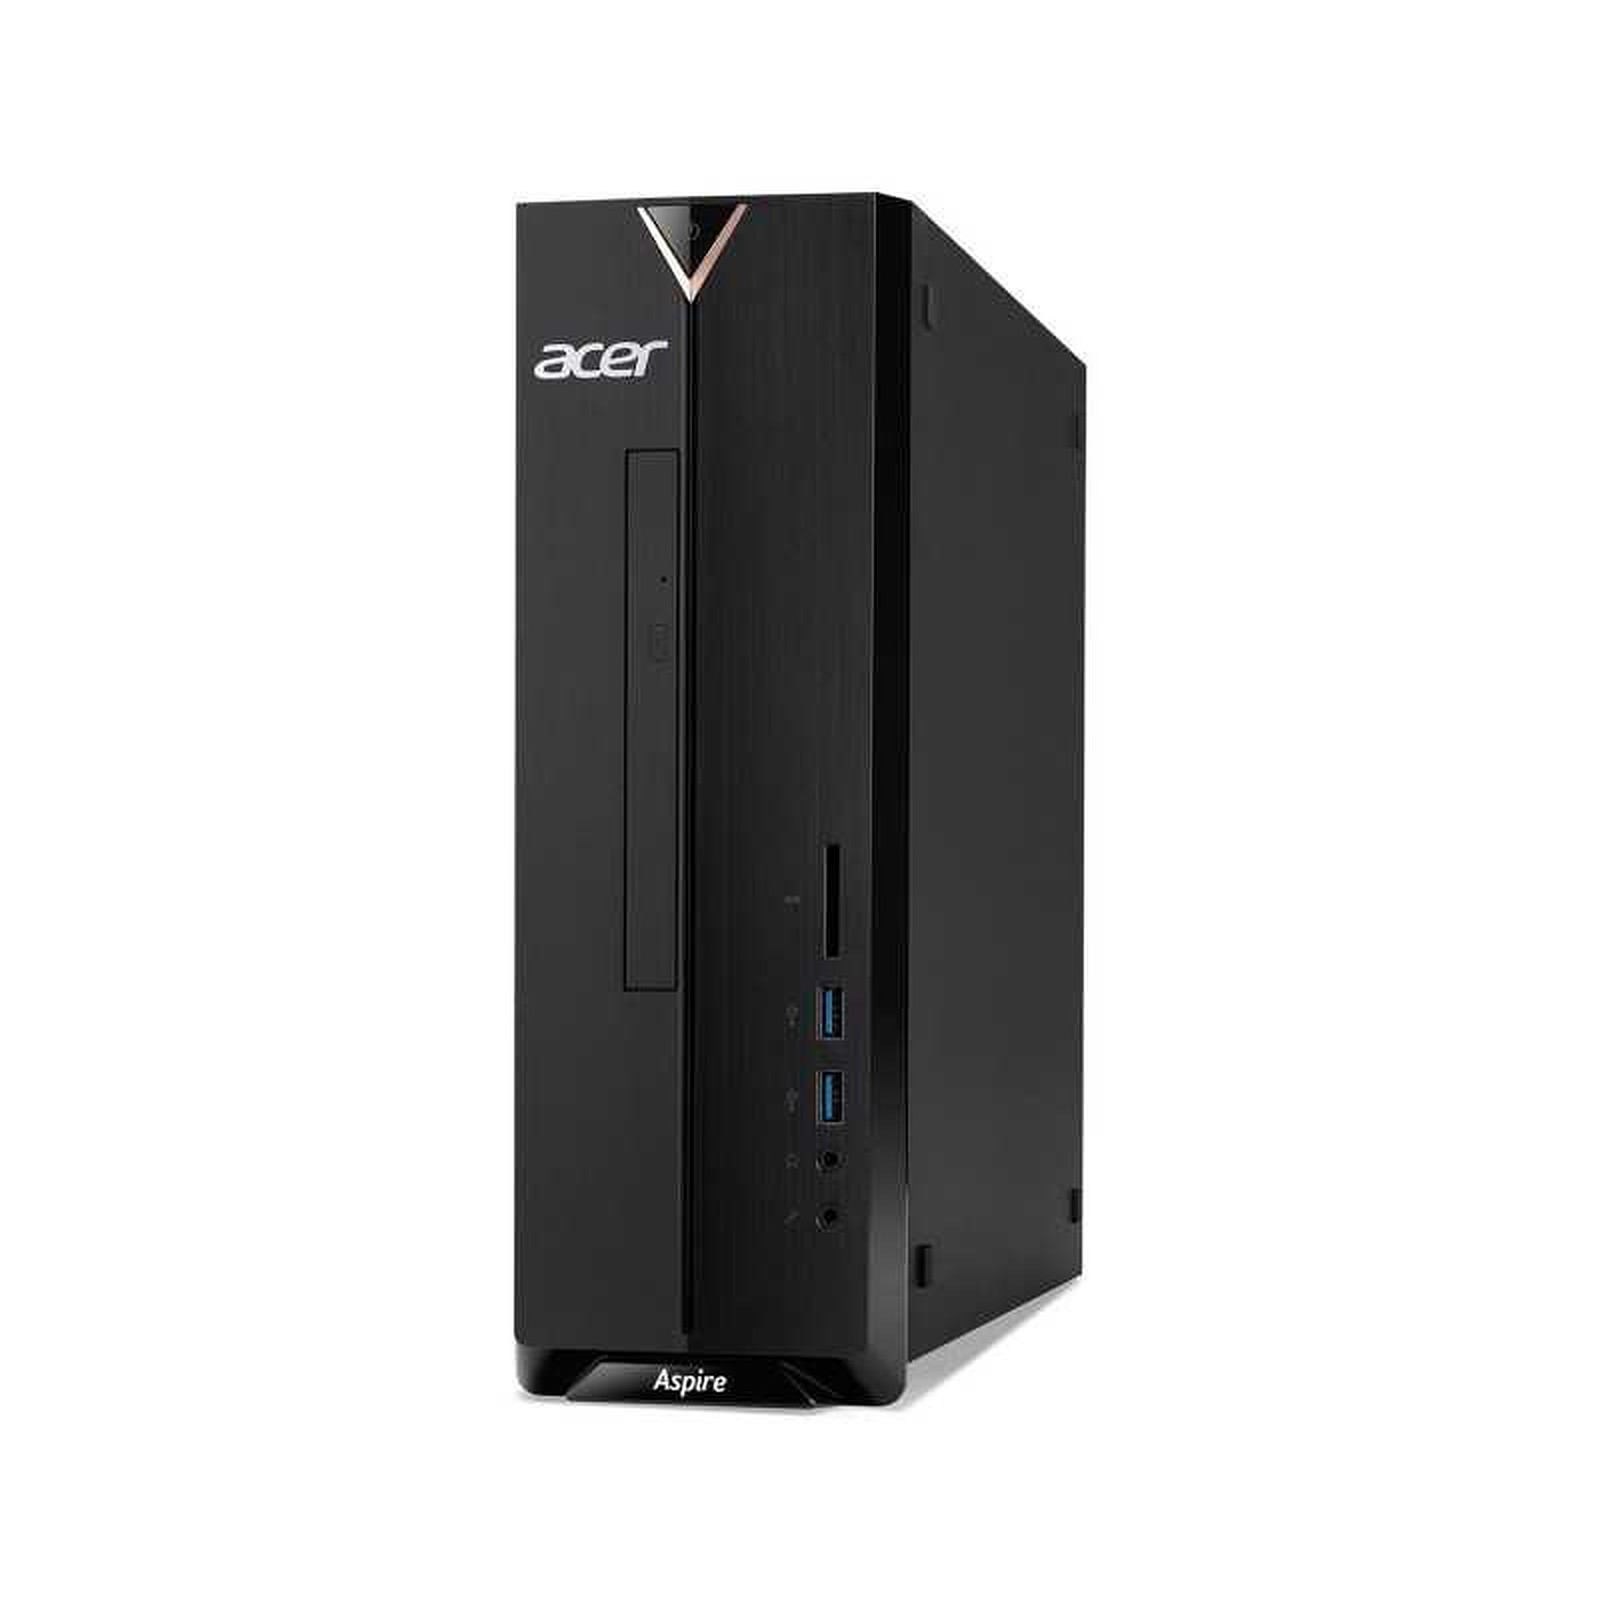 Acer Aspire XC-340-004 (DT.BFLEF.004) · Reconditionne - PC de bureau reconditionne Acer